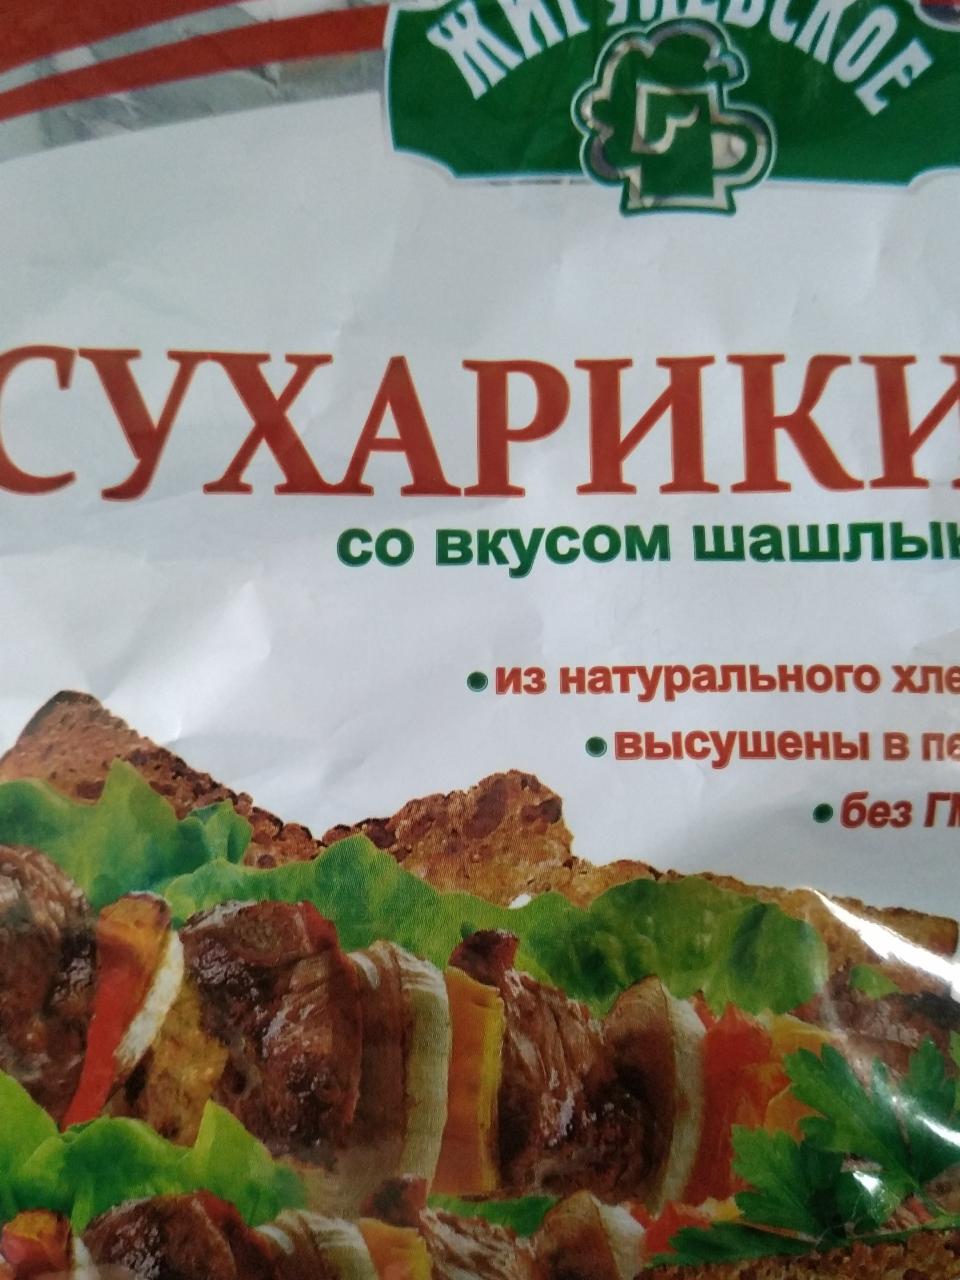 Фото - Сухарики со вкусом шашлыка Жигулевское